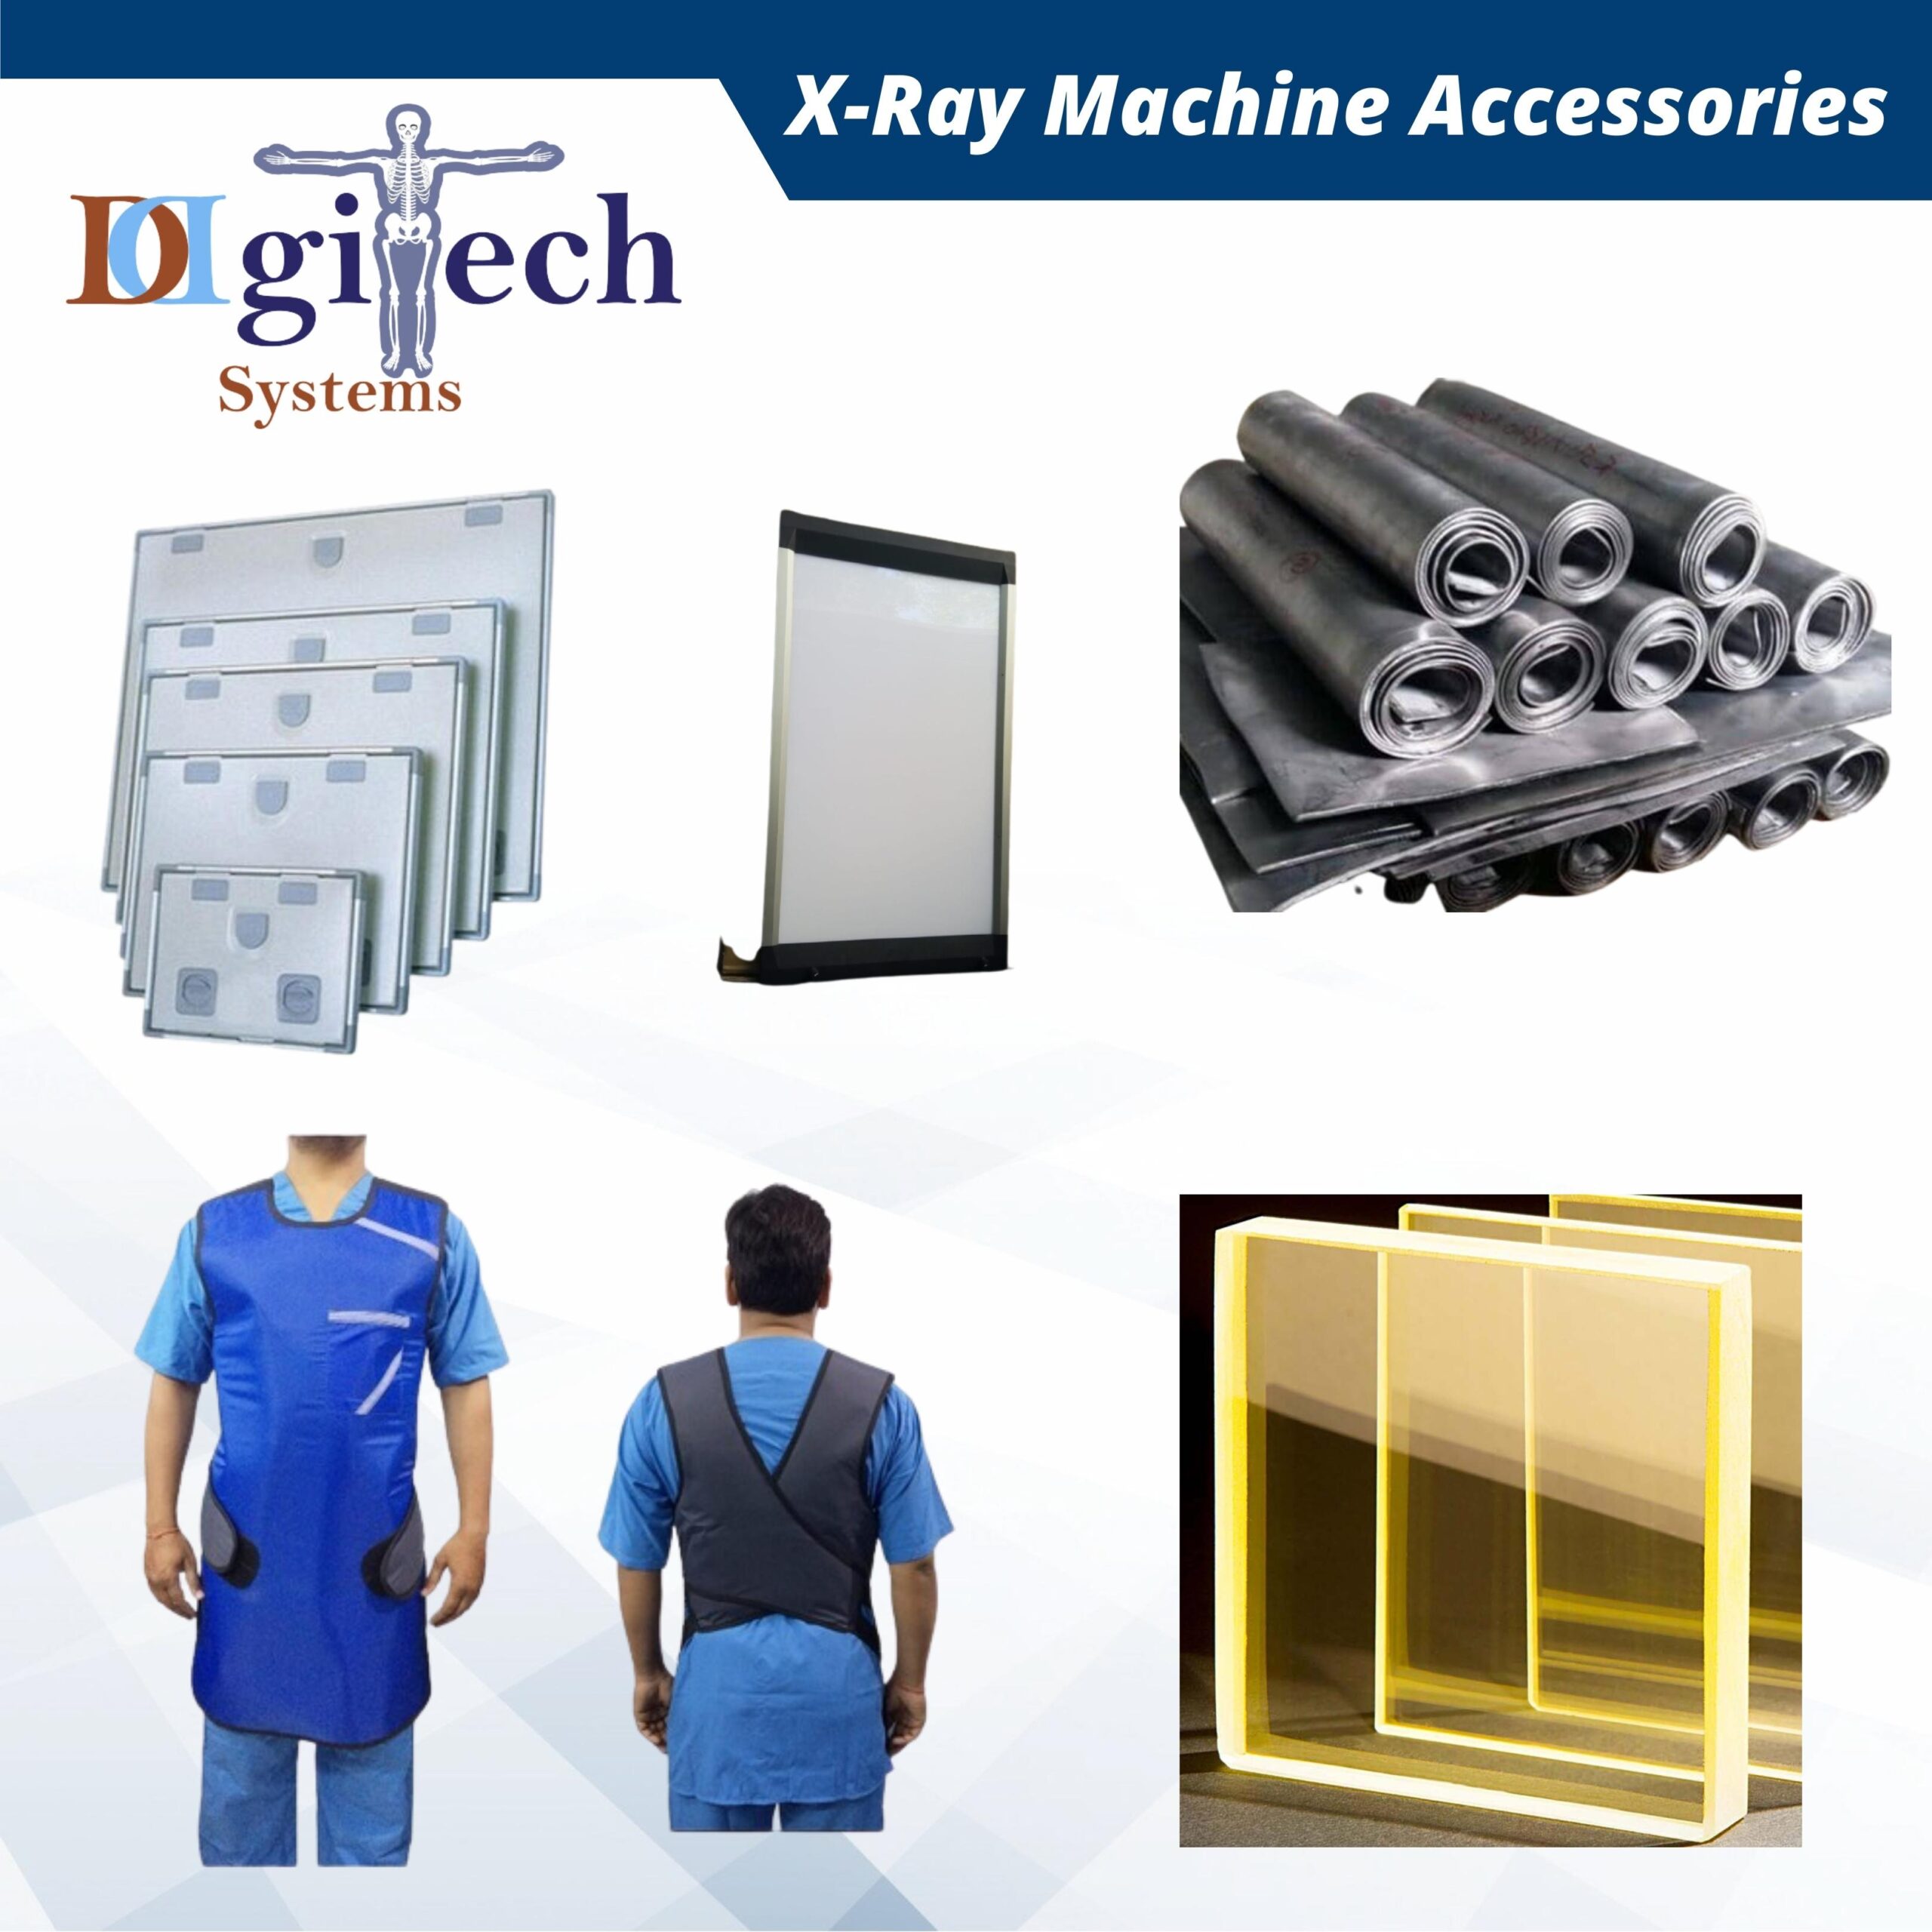 XRAy Machine Accessories